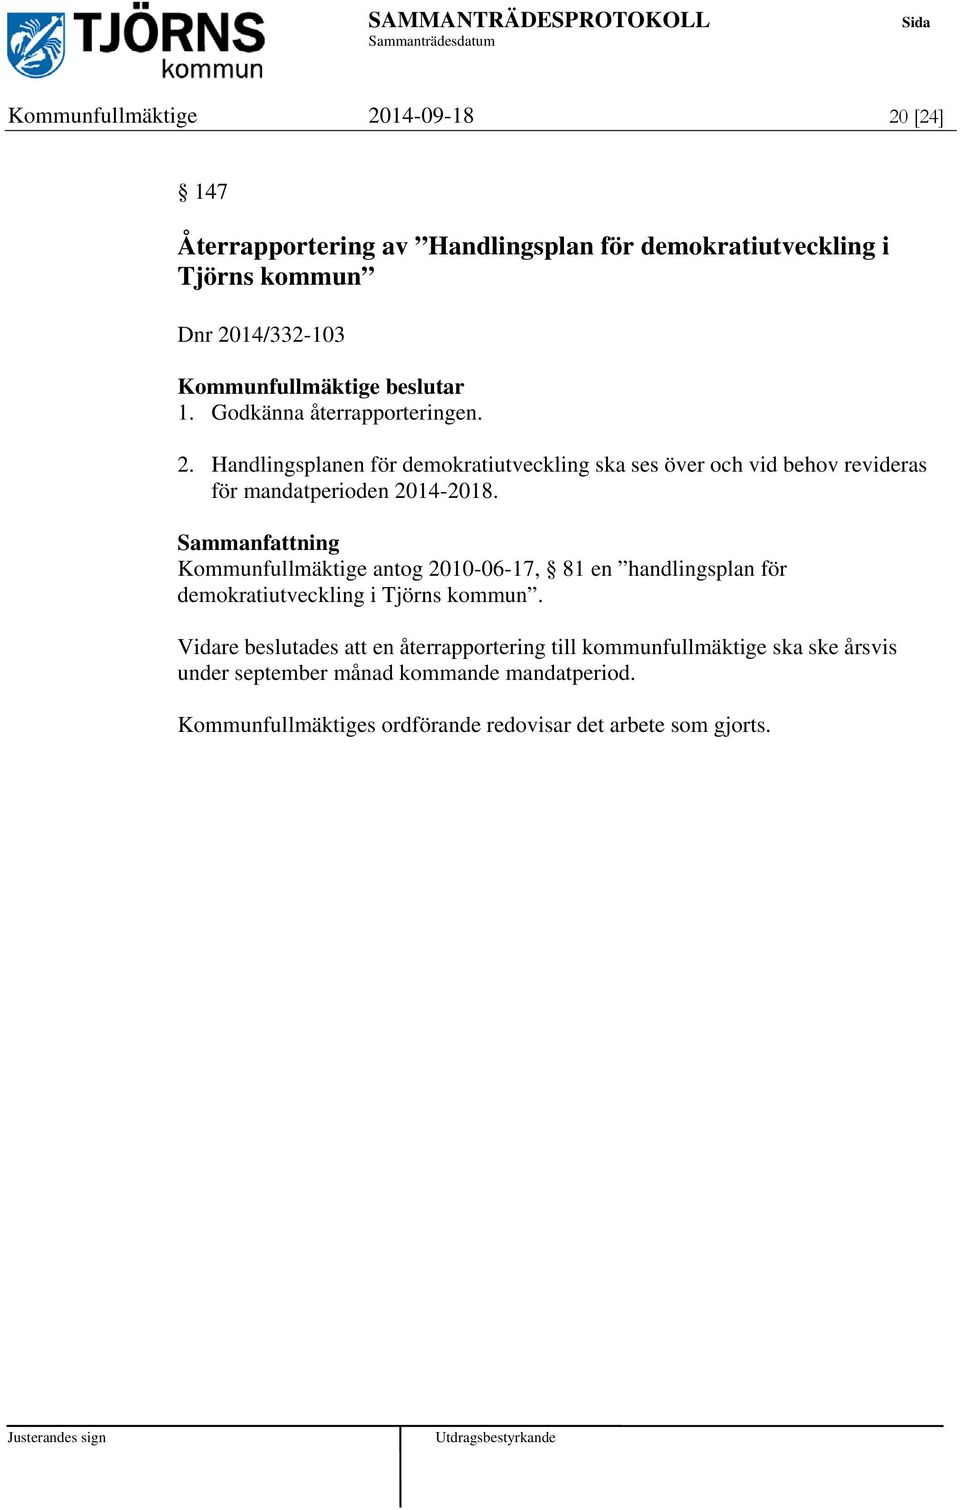 Kommunfullmäktige antog 2010-06-17, 81 en handlingsplan för demokratiutveckling i Tjörns kommun.